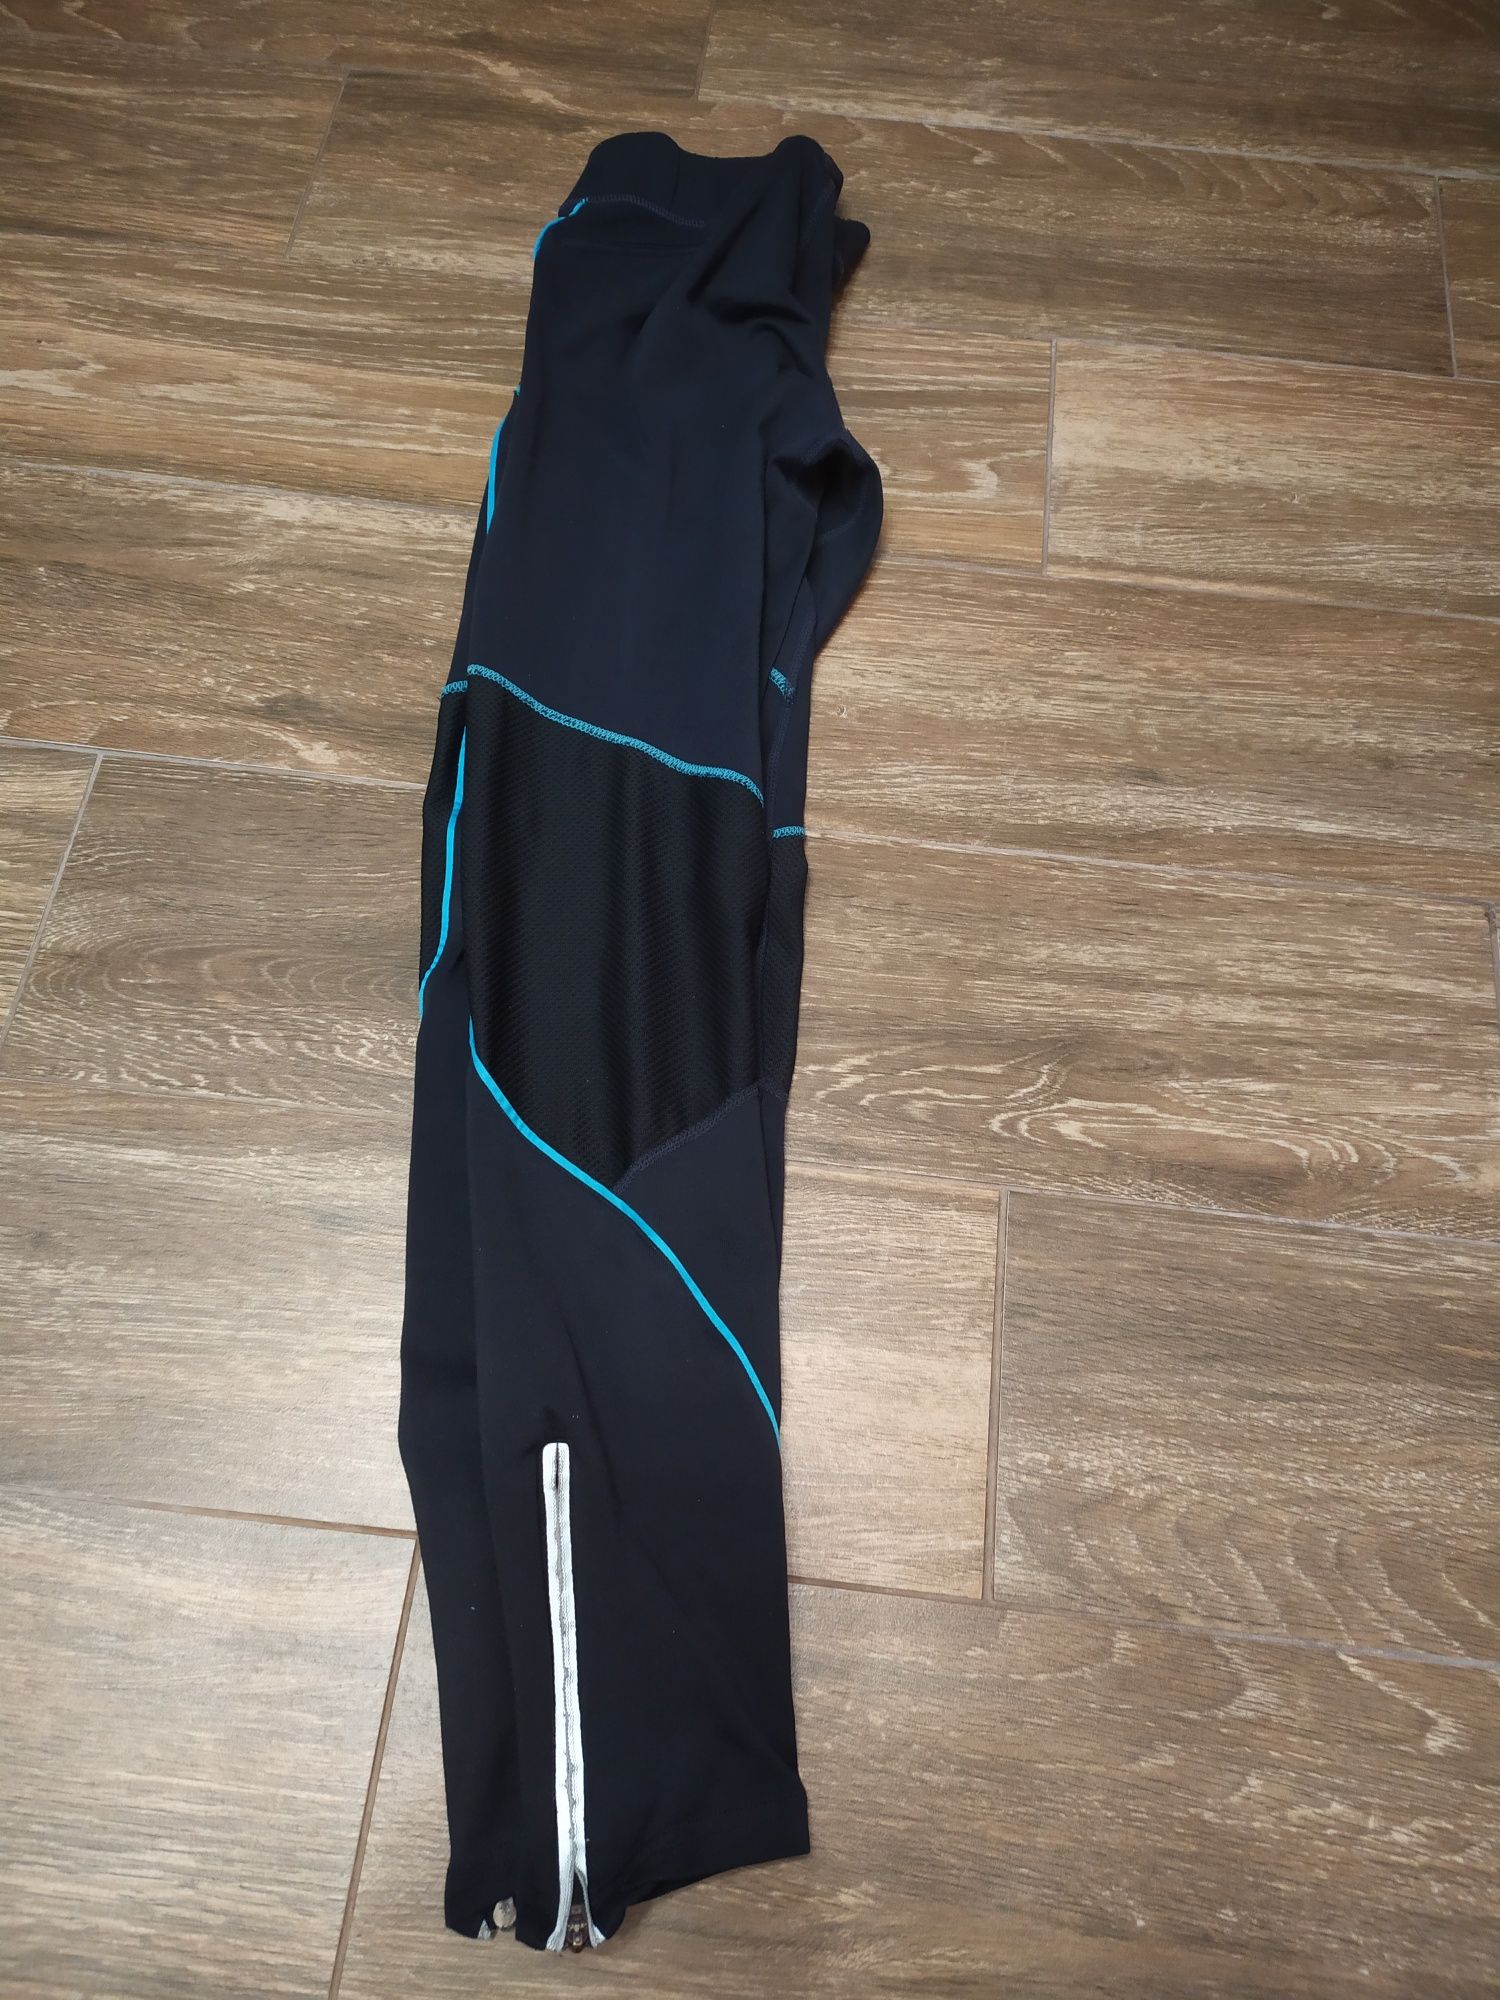 Leginsy spodnie Craft rozmiar S do biegania lub fitness czarne z niebi